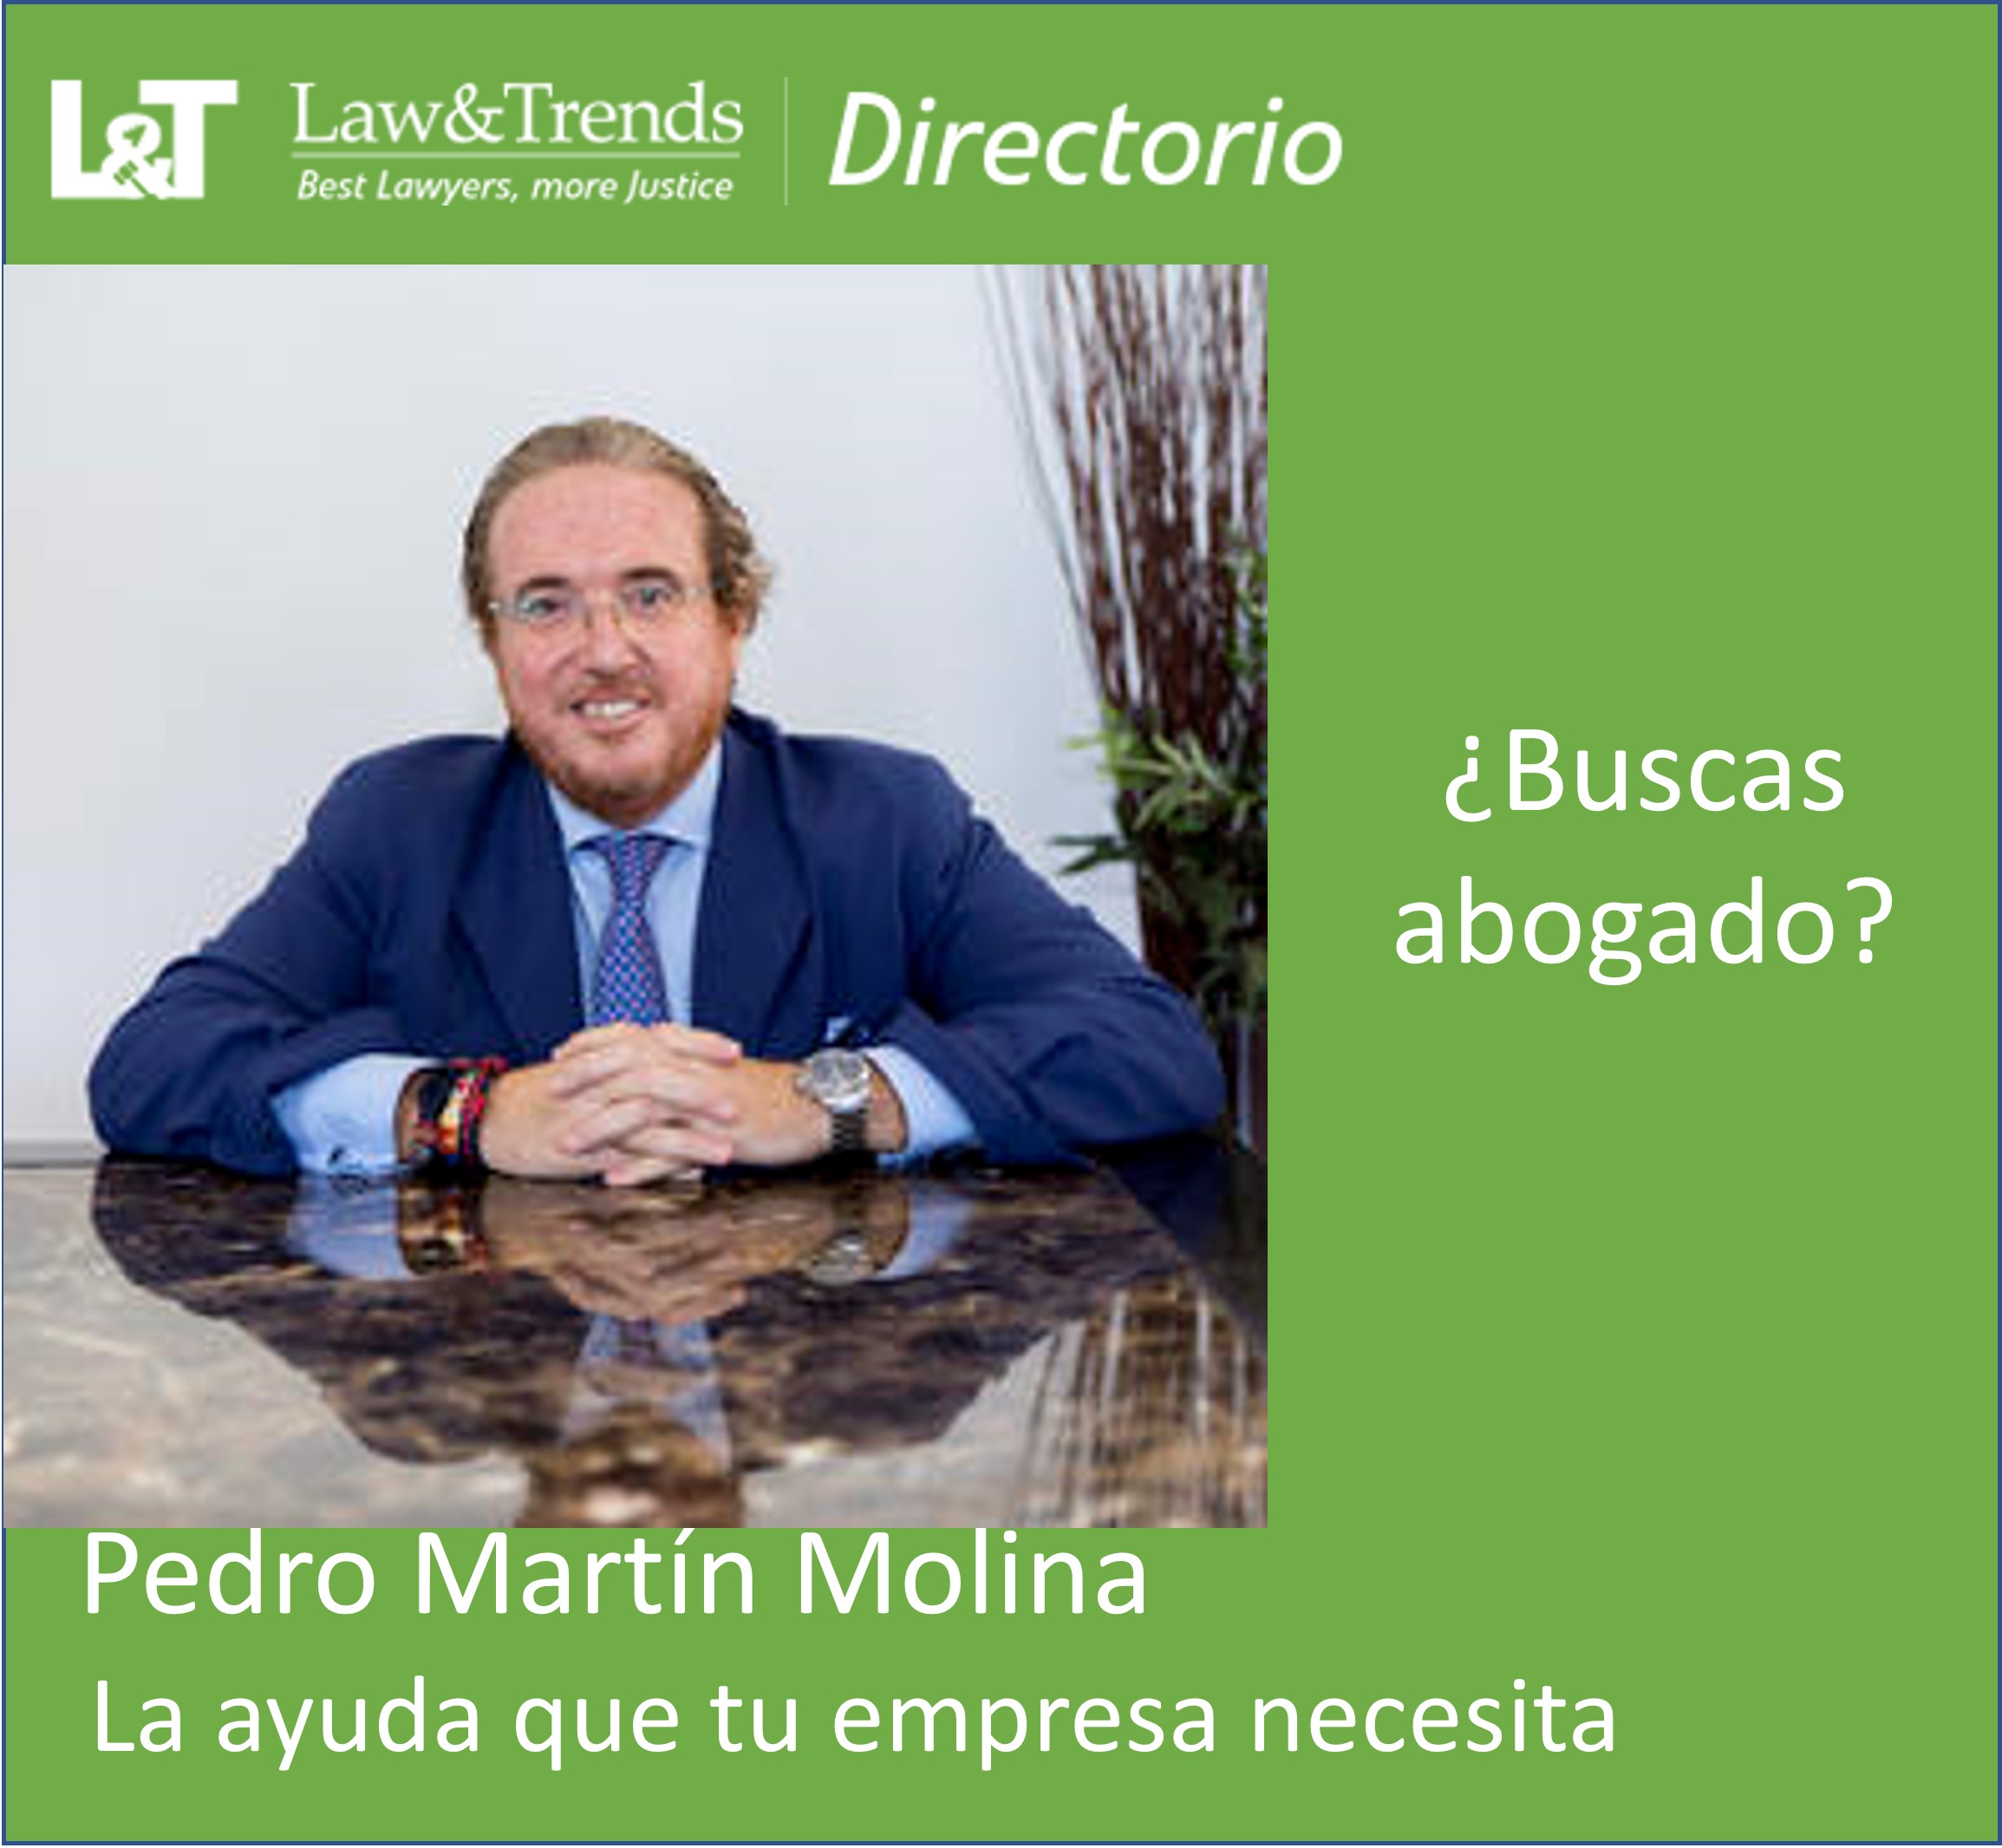 Grupo Martín Molina abogados madrid
